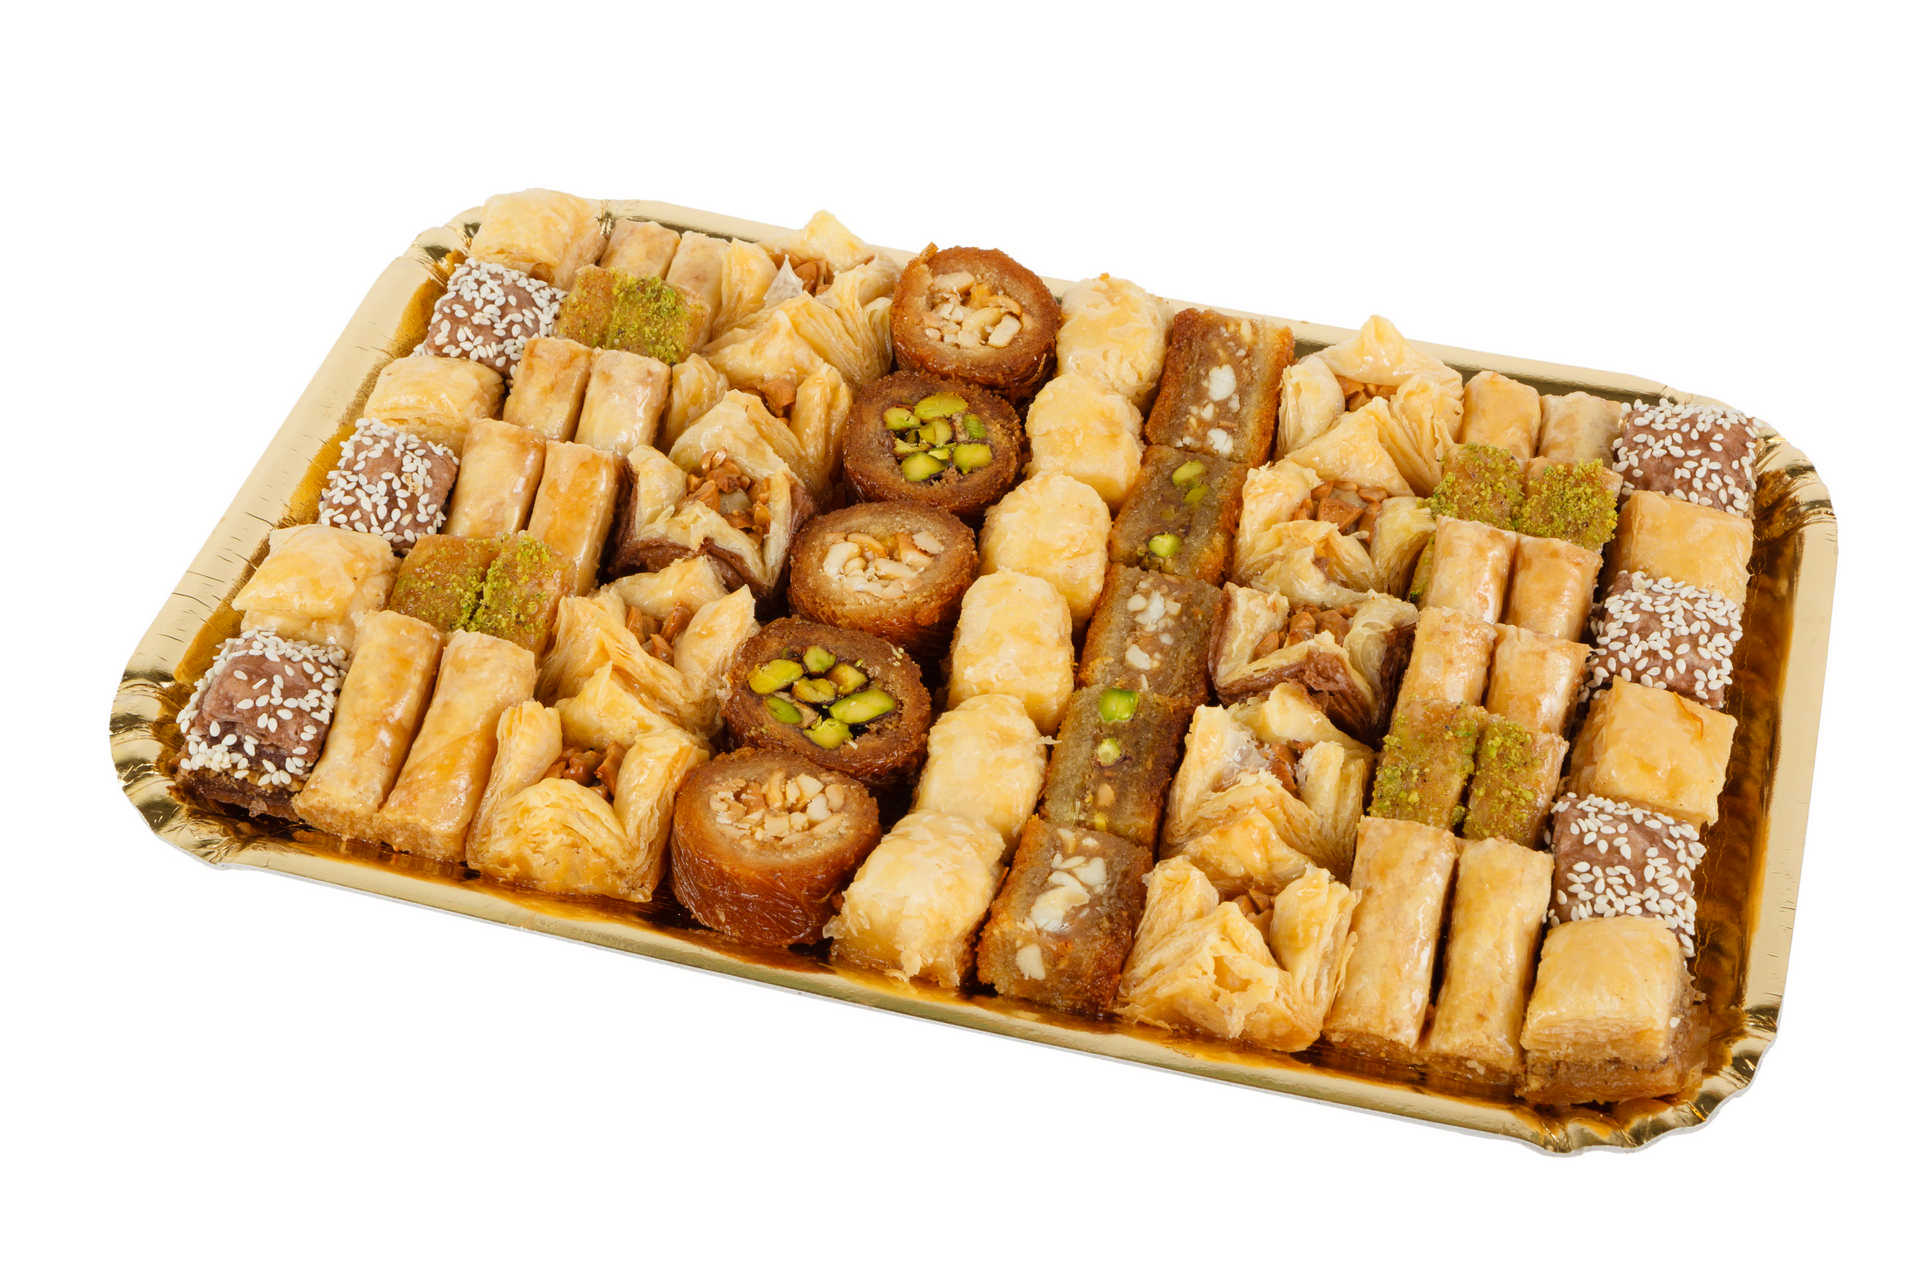 Pate D'or Пахлава - ассорти ливанских сладостей "1000 и 1 ночь", 1000 г import_files_75_75ecc6bf787e11e799f3606c664b1de1_6d364de02dcf11e882f7a0a8cddf3602.jpg